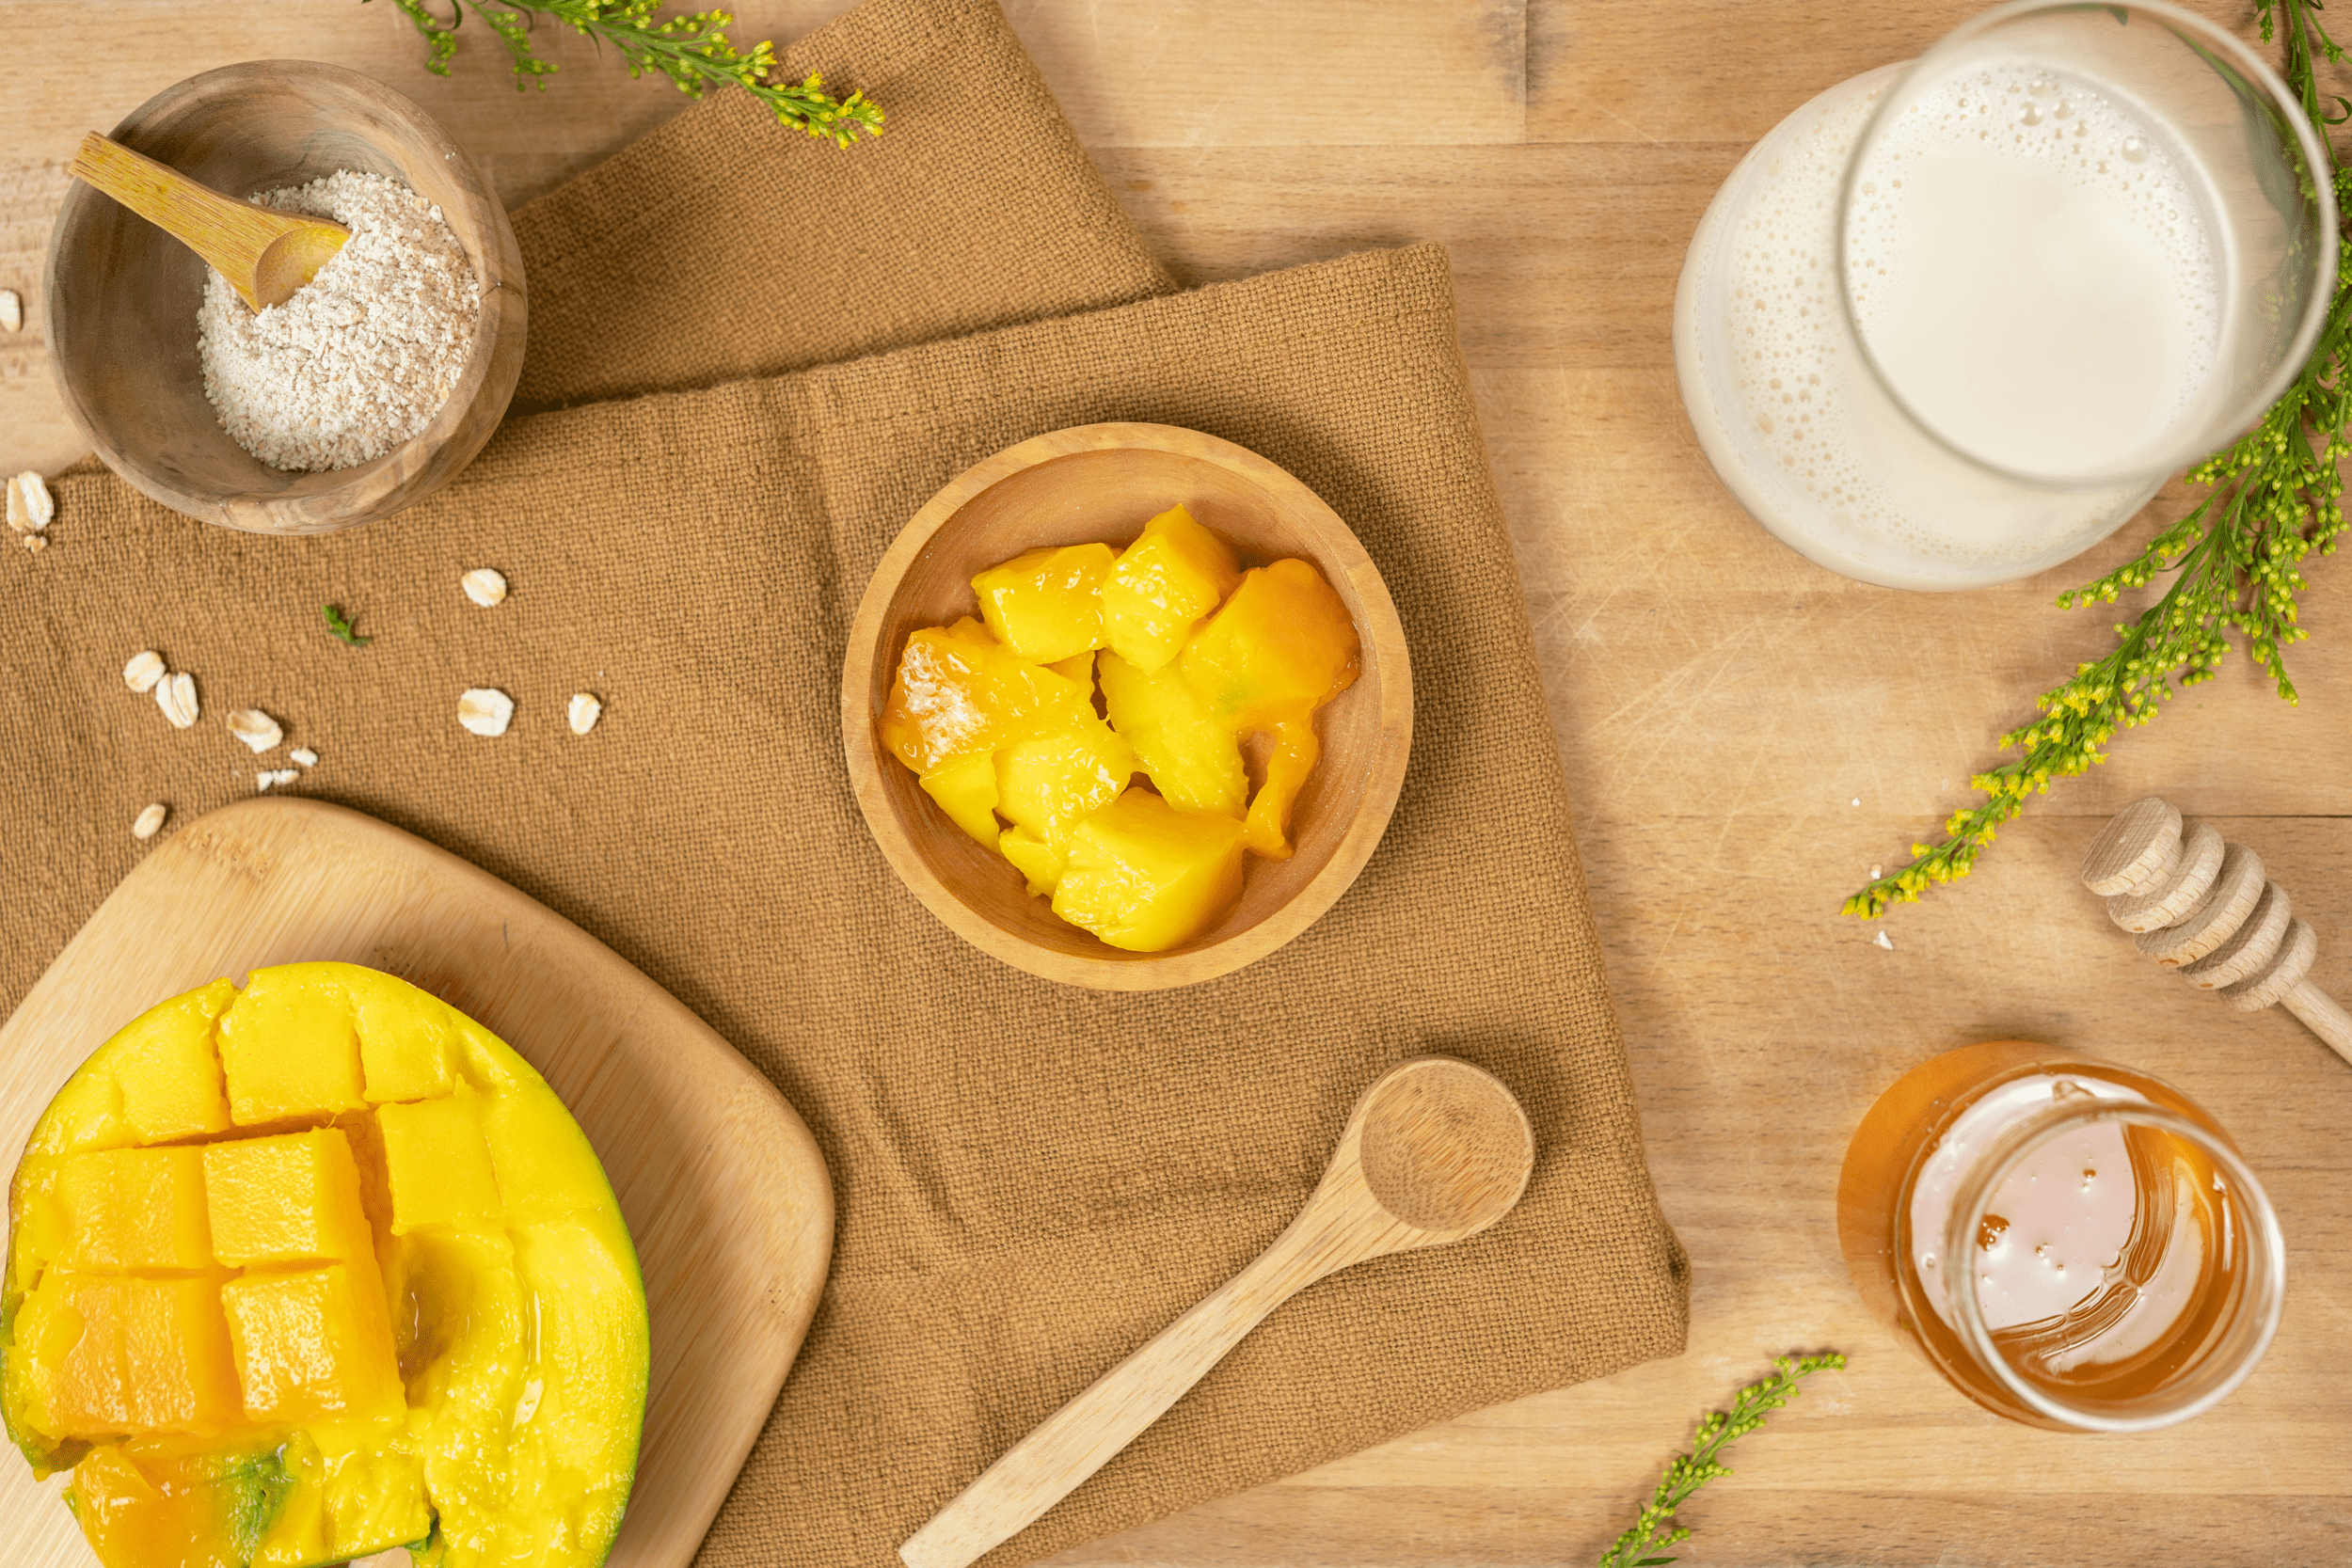 trozos de mango cortados, miel, avena y crema espesa son los ingredientes de la mascarilla de barro